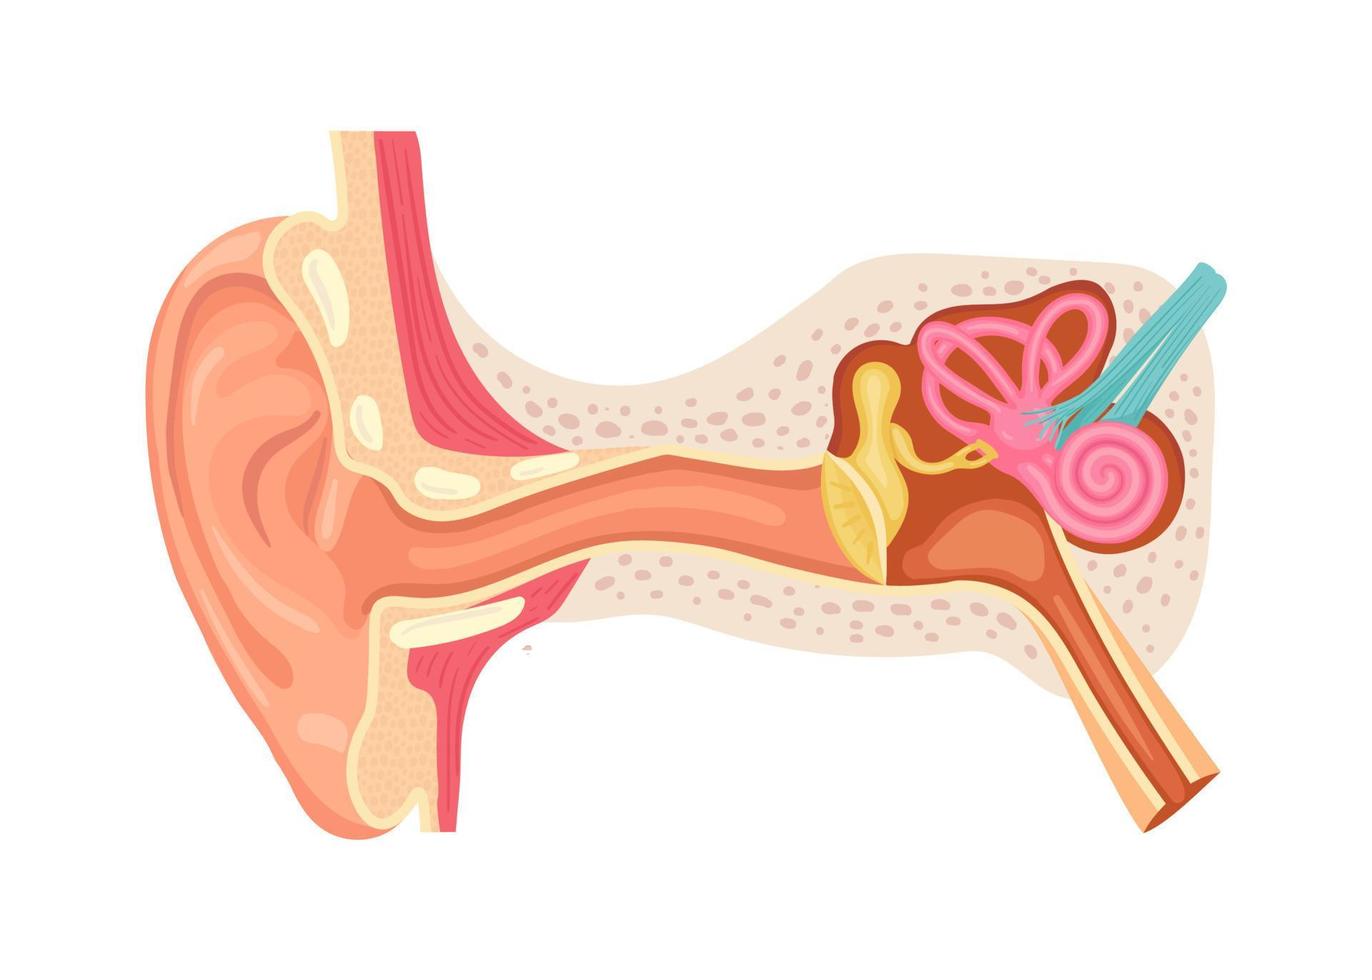 anatomia do ouvido humano. estrutura interna das orelhas, ilustração vetorial médica vetor